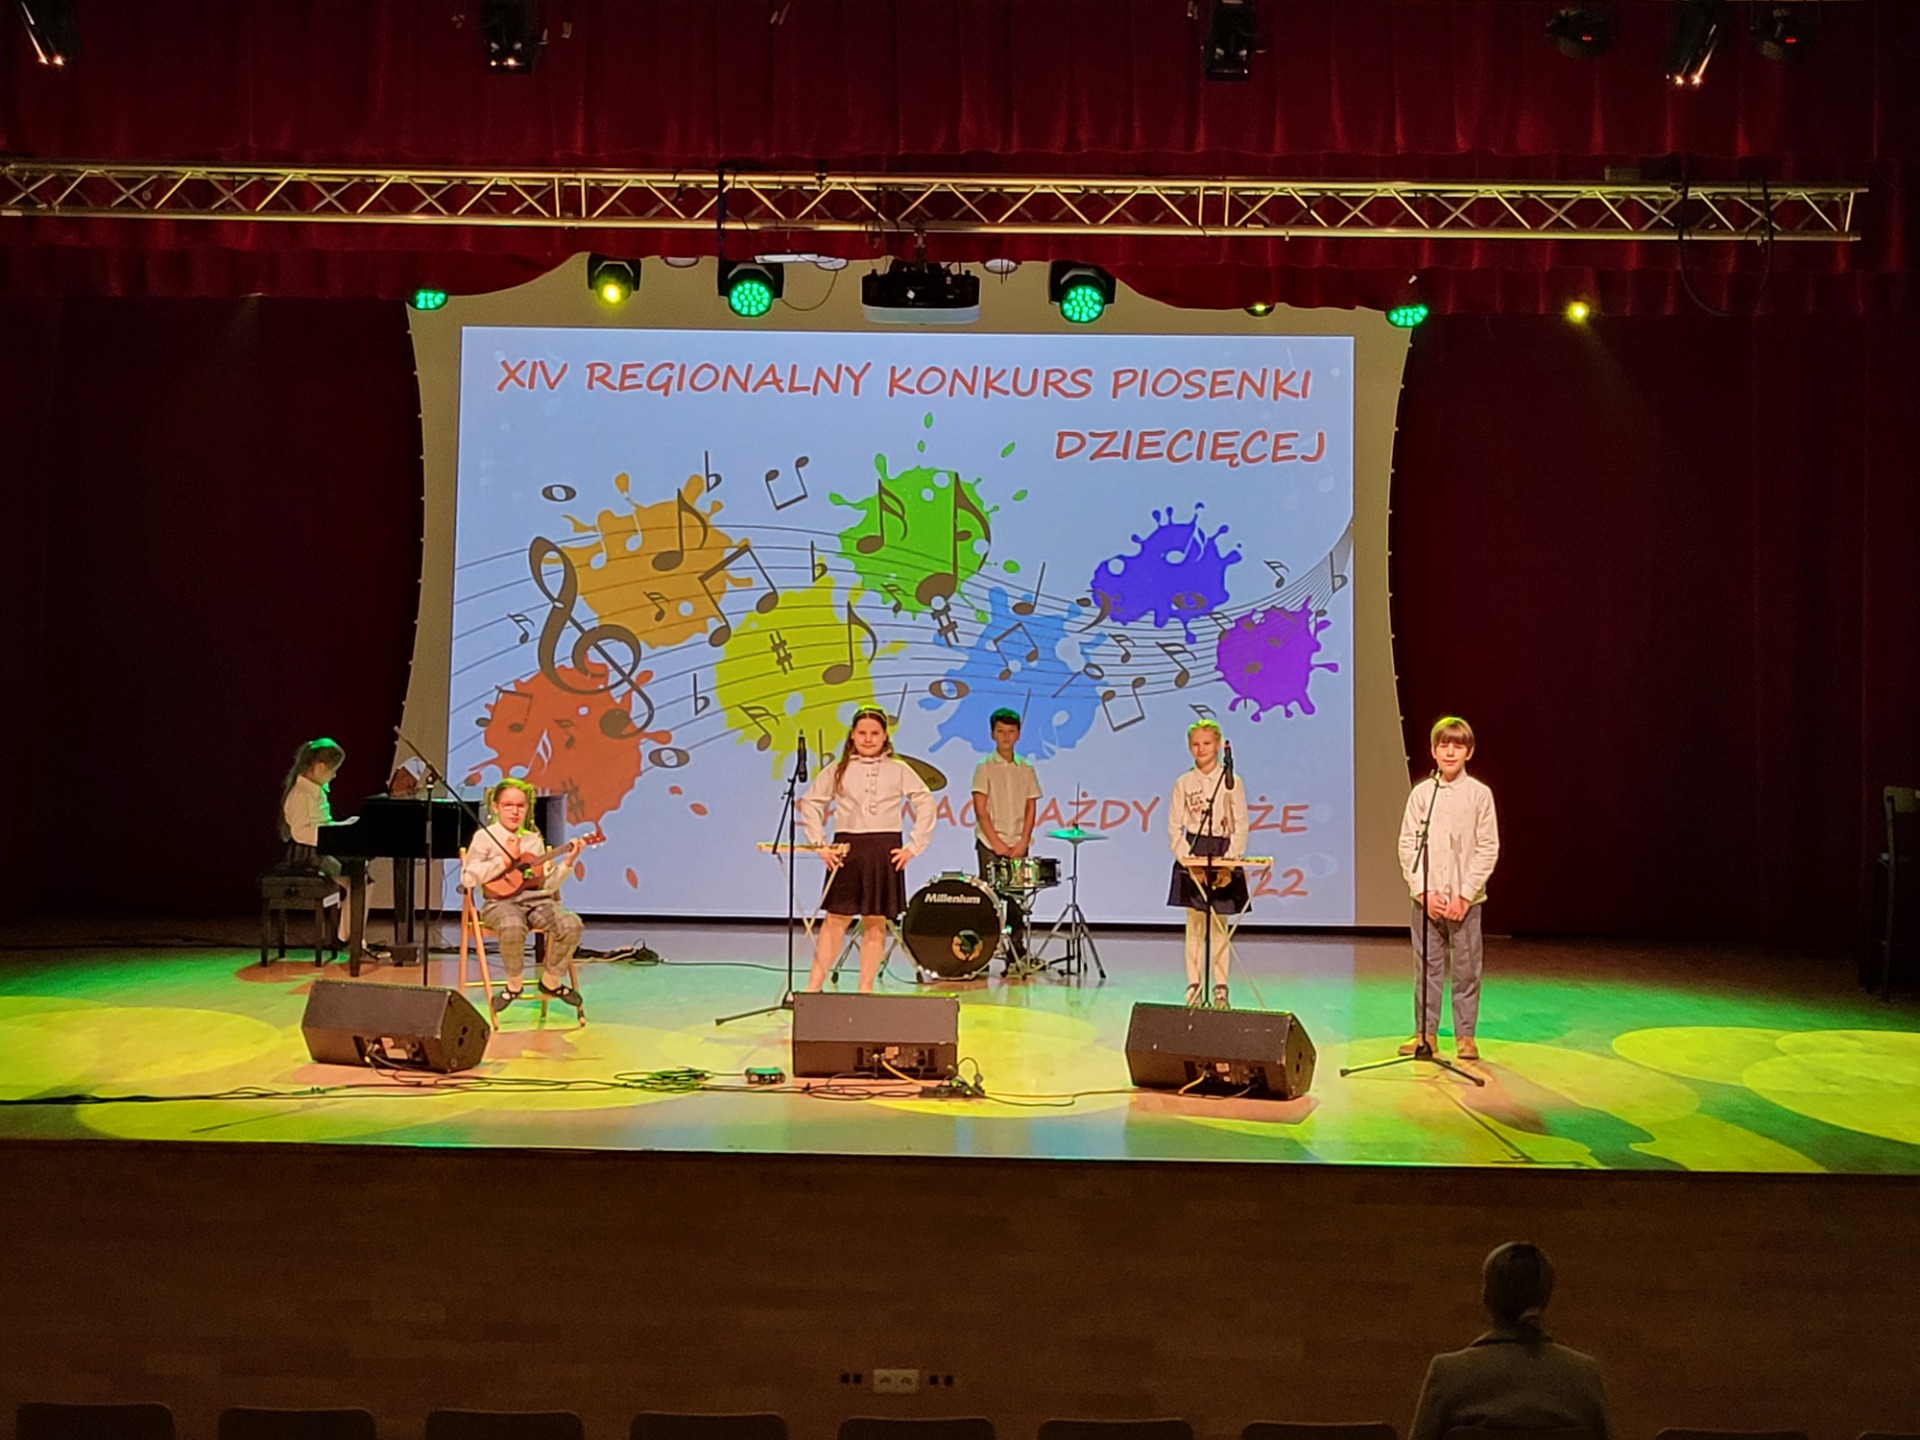 Sześcioro uczniów tworzących zespół muzyczny stoi na scenie. Uczniowie stoją przy mikrofonach i instrumentach. W tle widać widoczny napis "XIV Regionalny Konkurs Piosenki Dziecięcej".